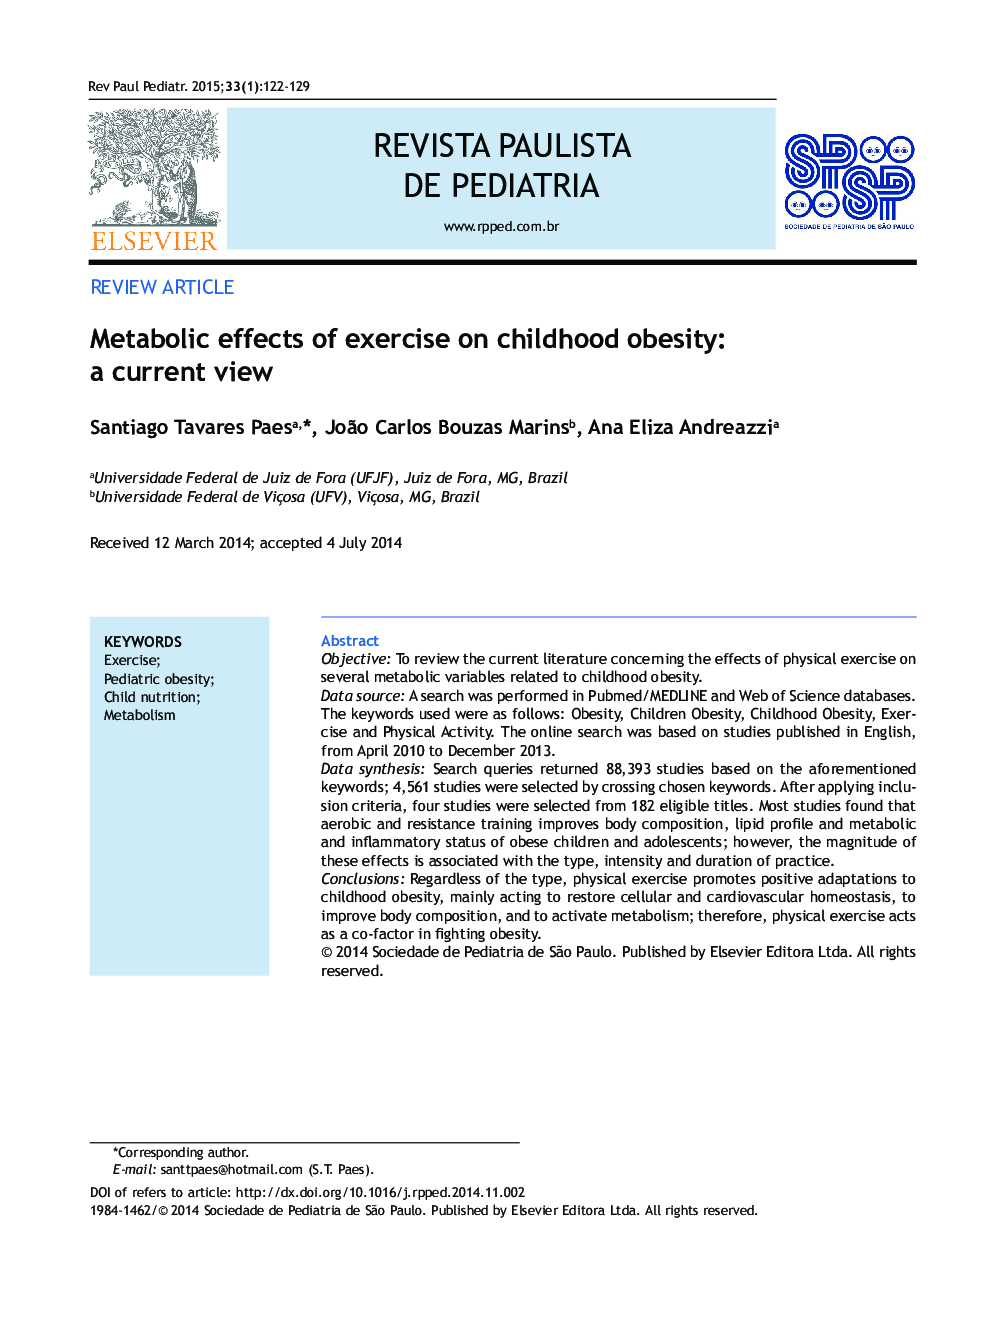 اثرات متابولیک ورزش بر چاقی کودکان: دیدگاه فعلی 